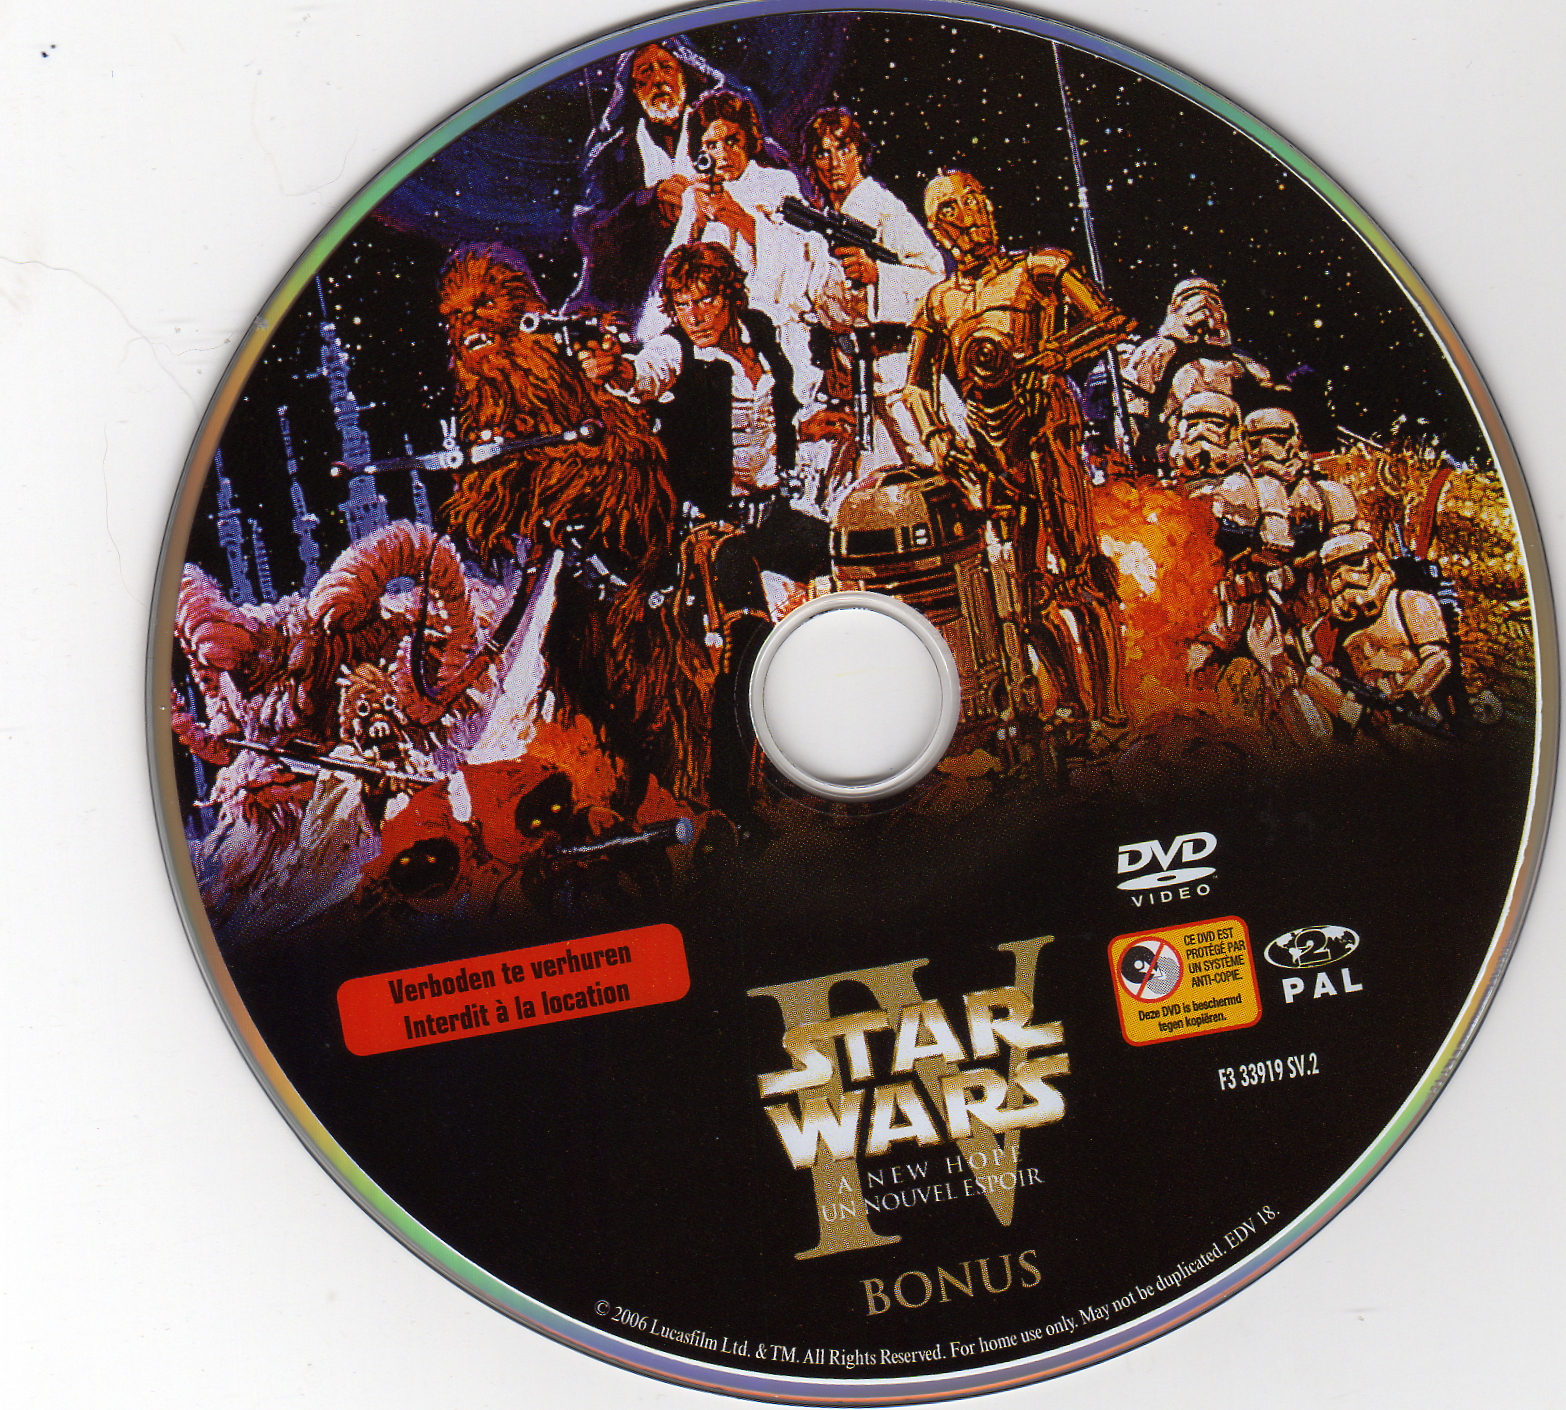 Star Wars La guerre des etoiles DISC 2